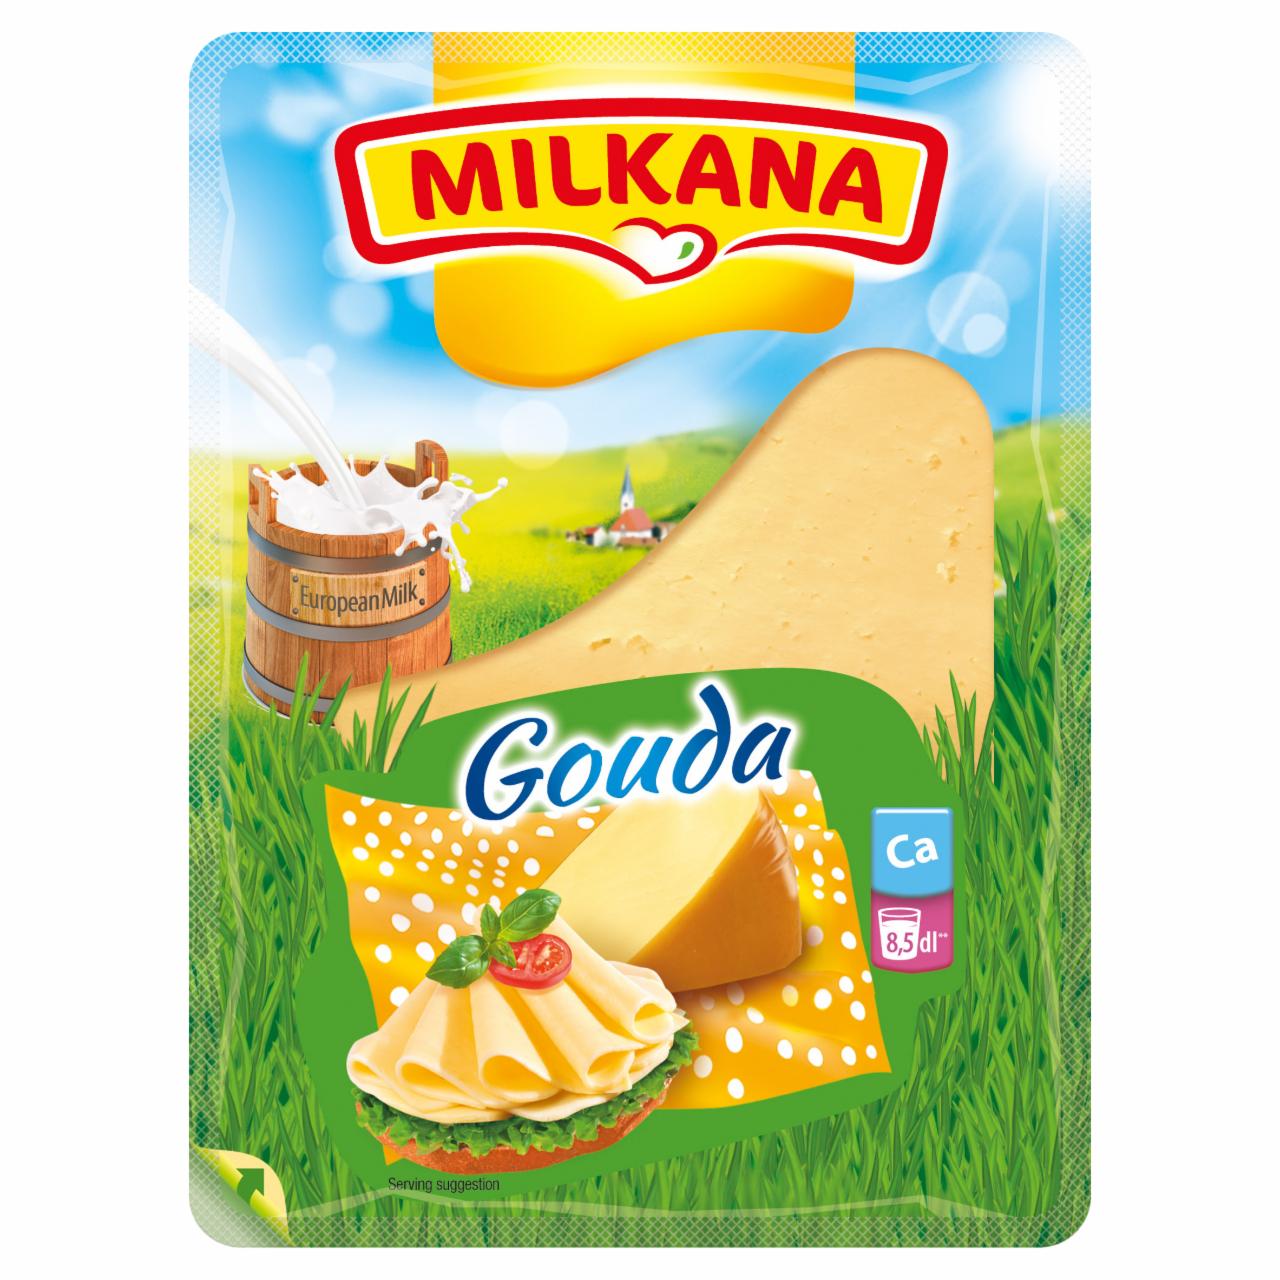 Képek - Milkana Gouda szeletelt sajt 125 g